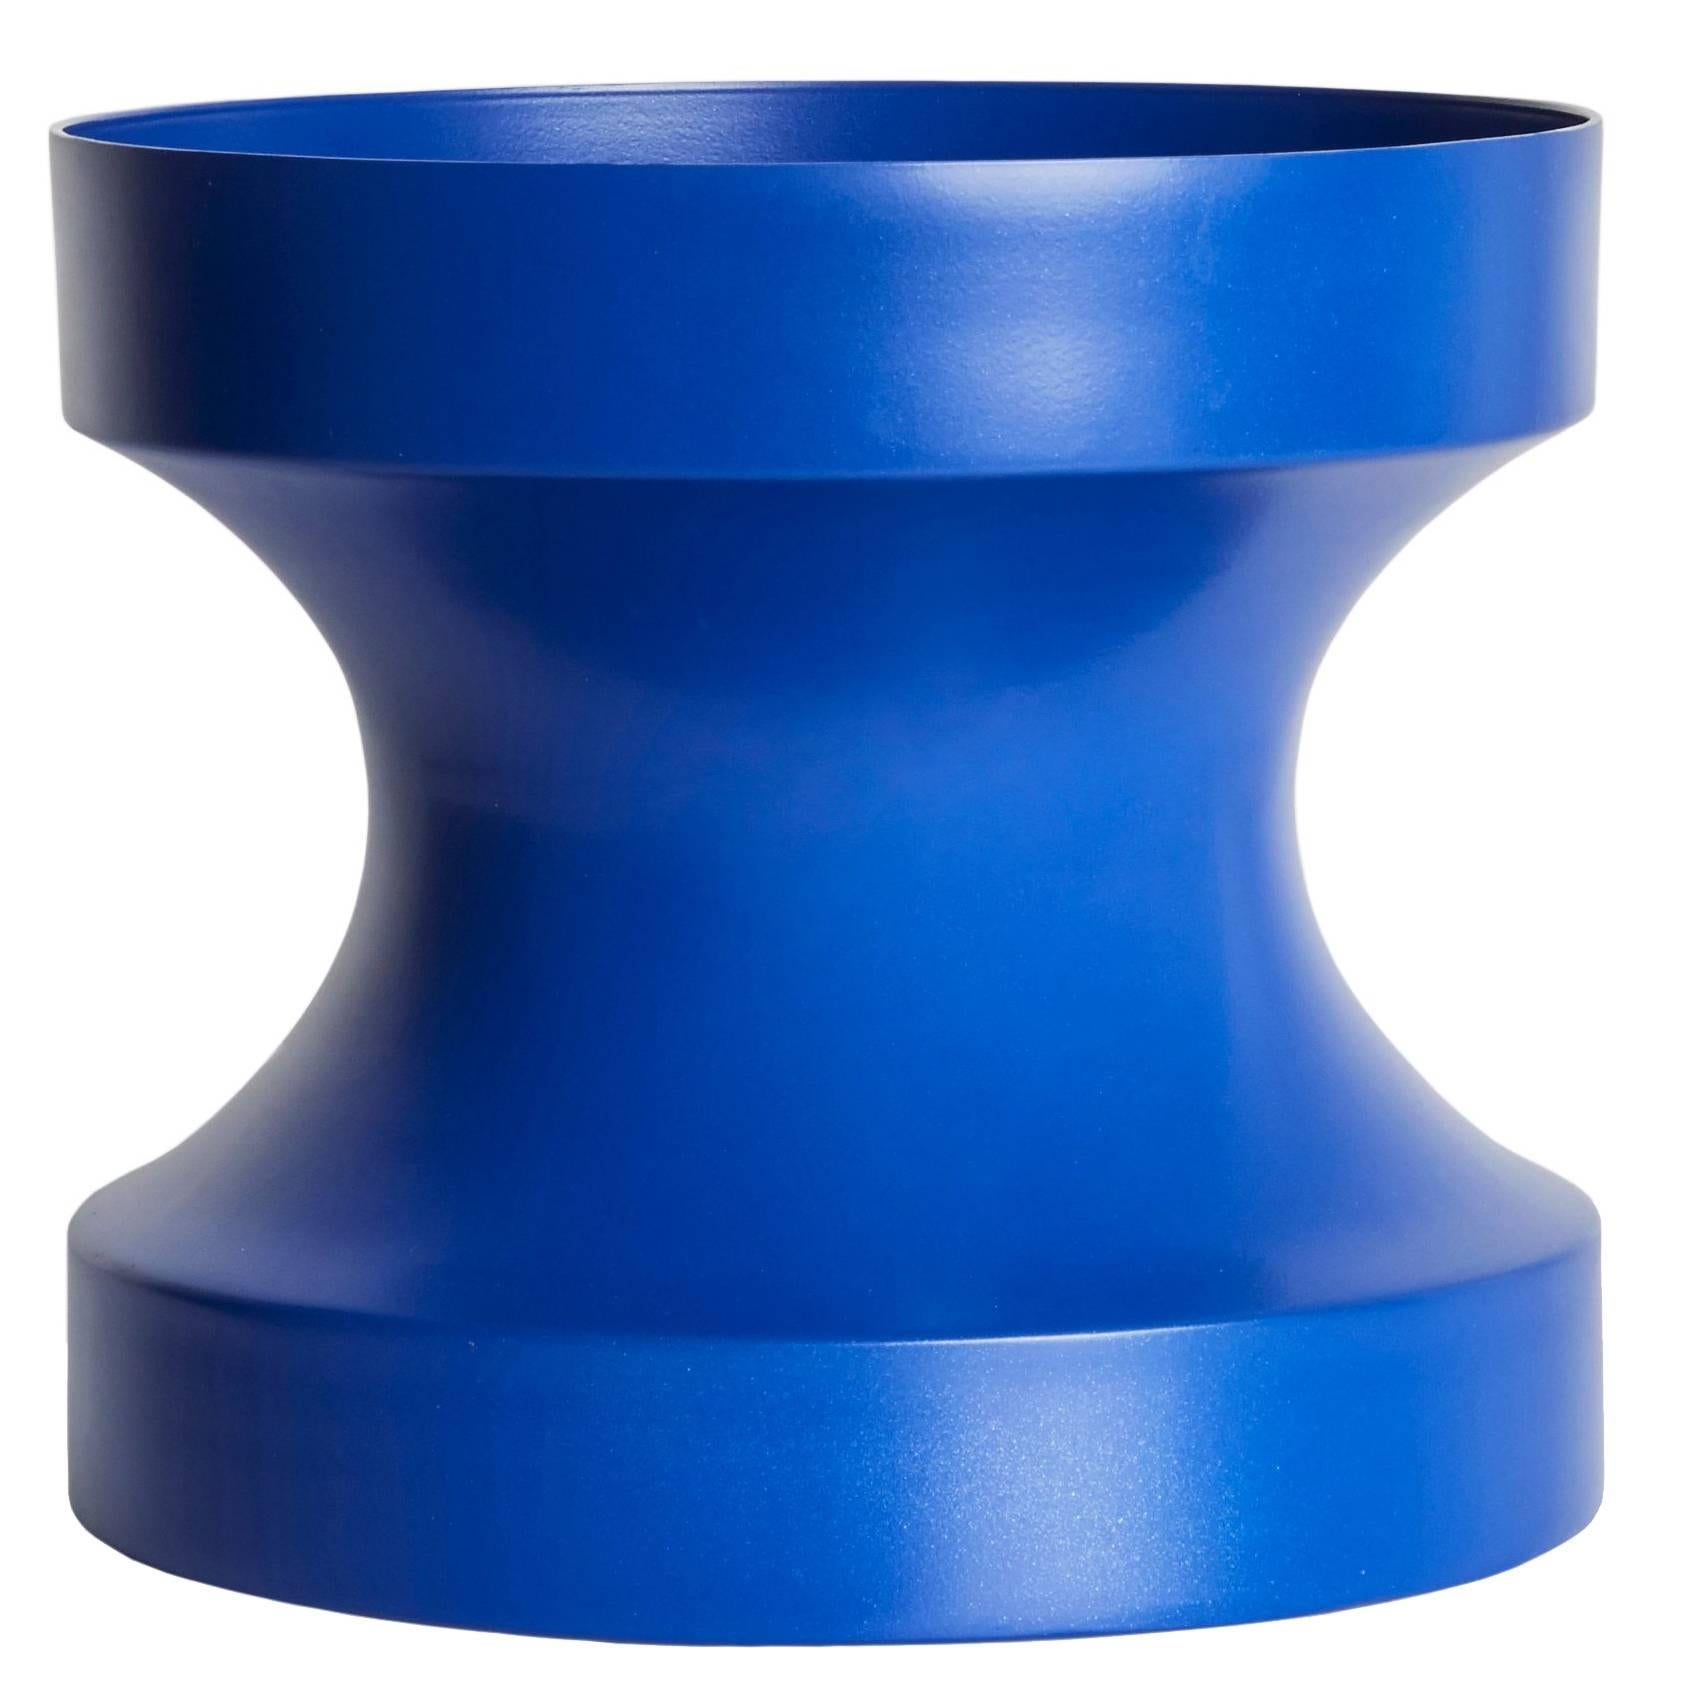 21st Century Contemporary Design: Aluminum Minimal Cir-Cut Vase in Blue For Sale